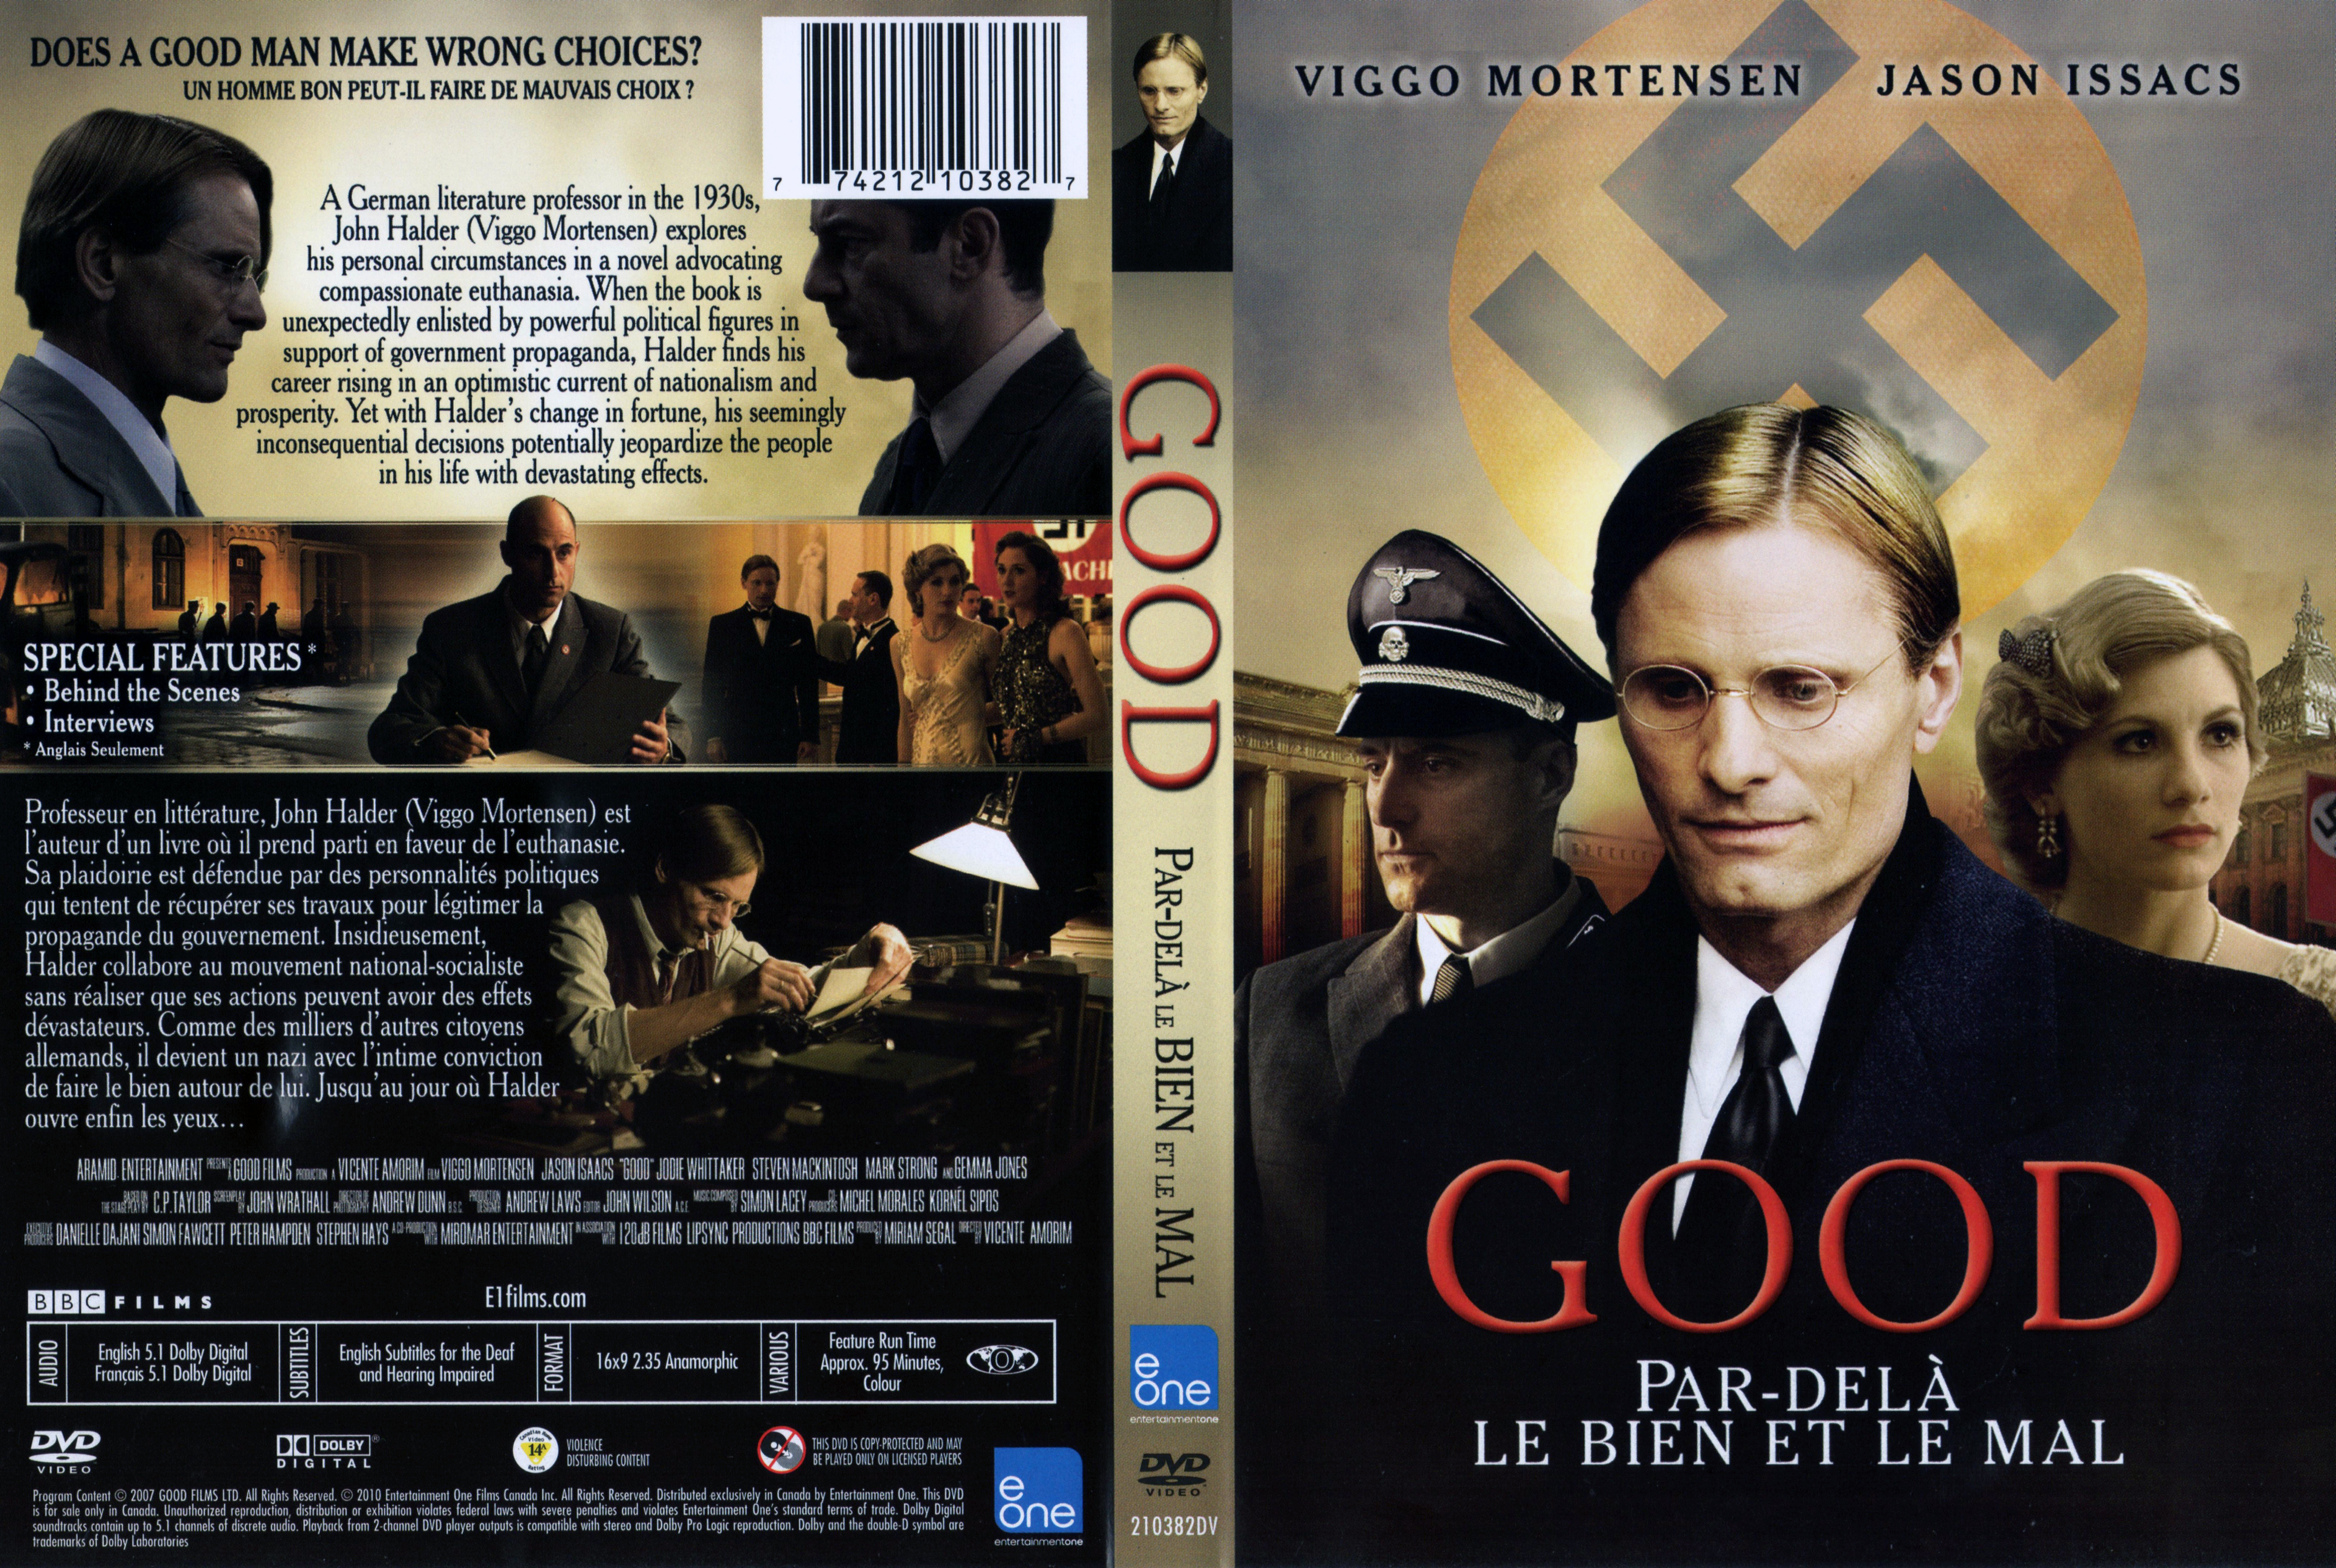 Jaquette DVD Good - Par-del le bien et le mal (Canadienne)